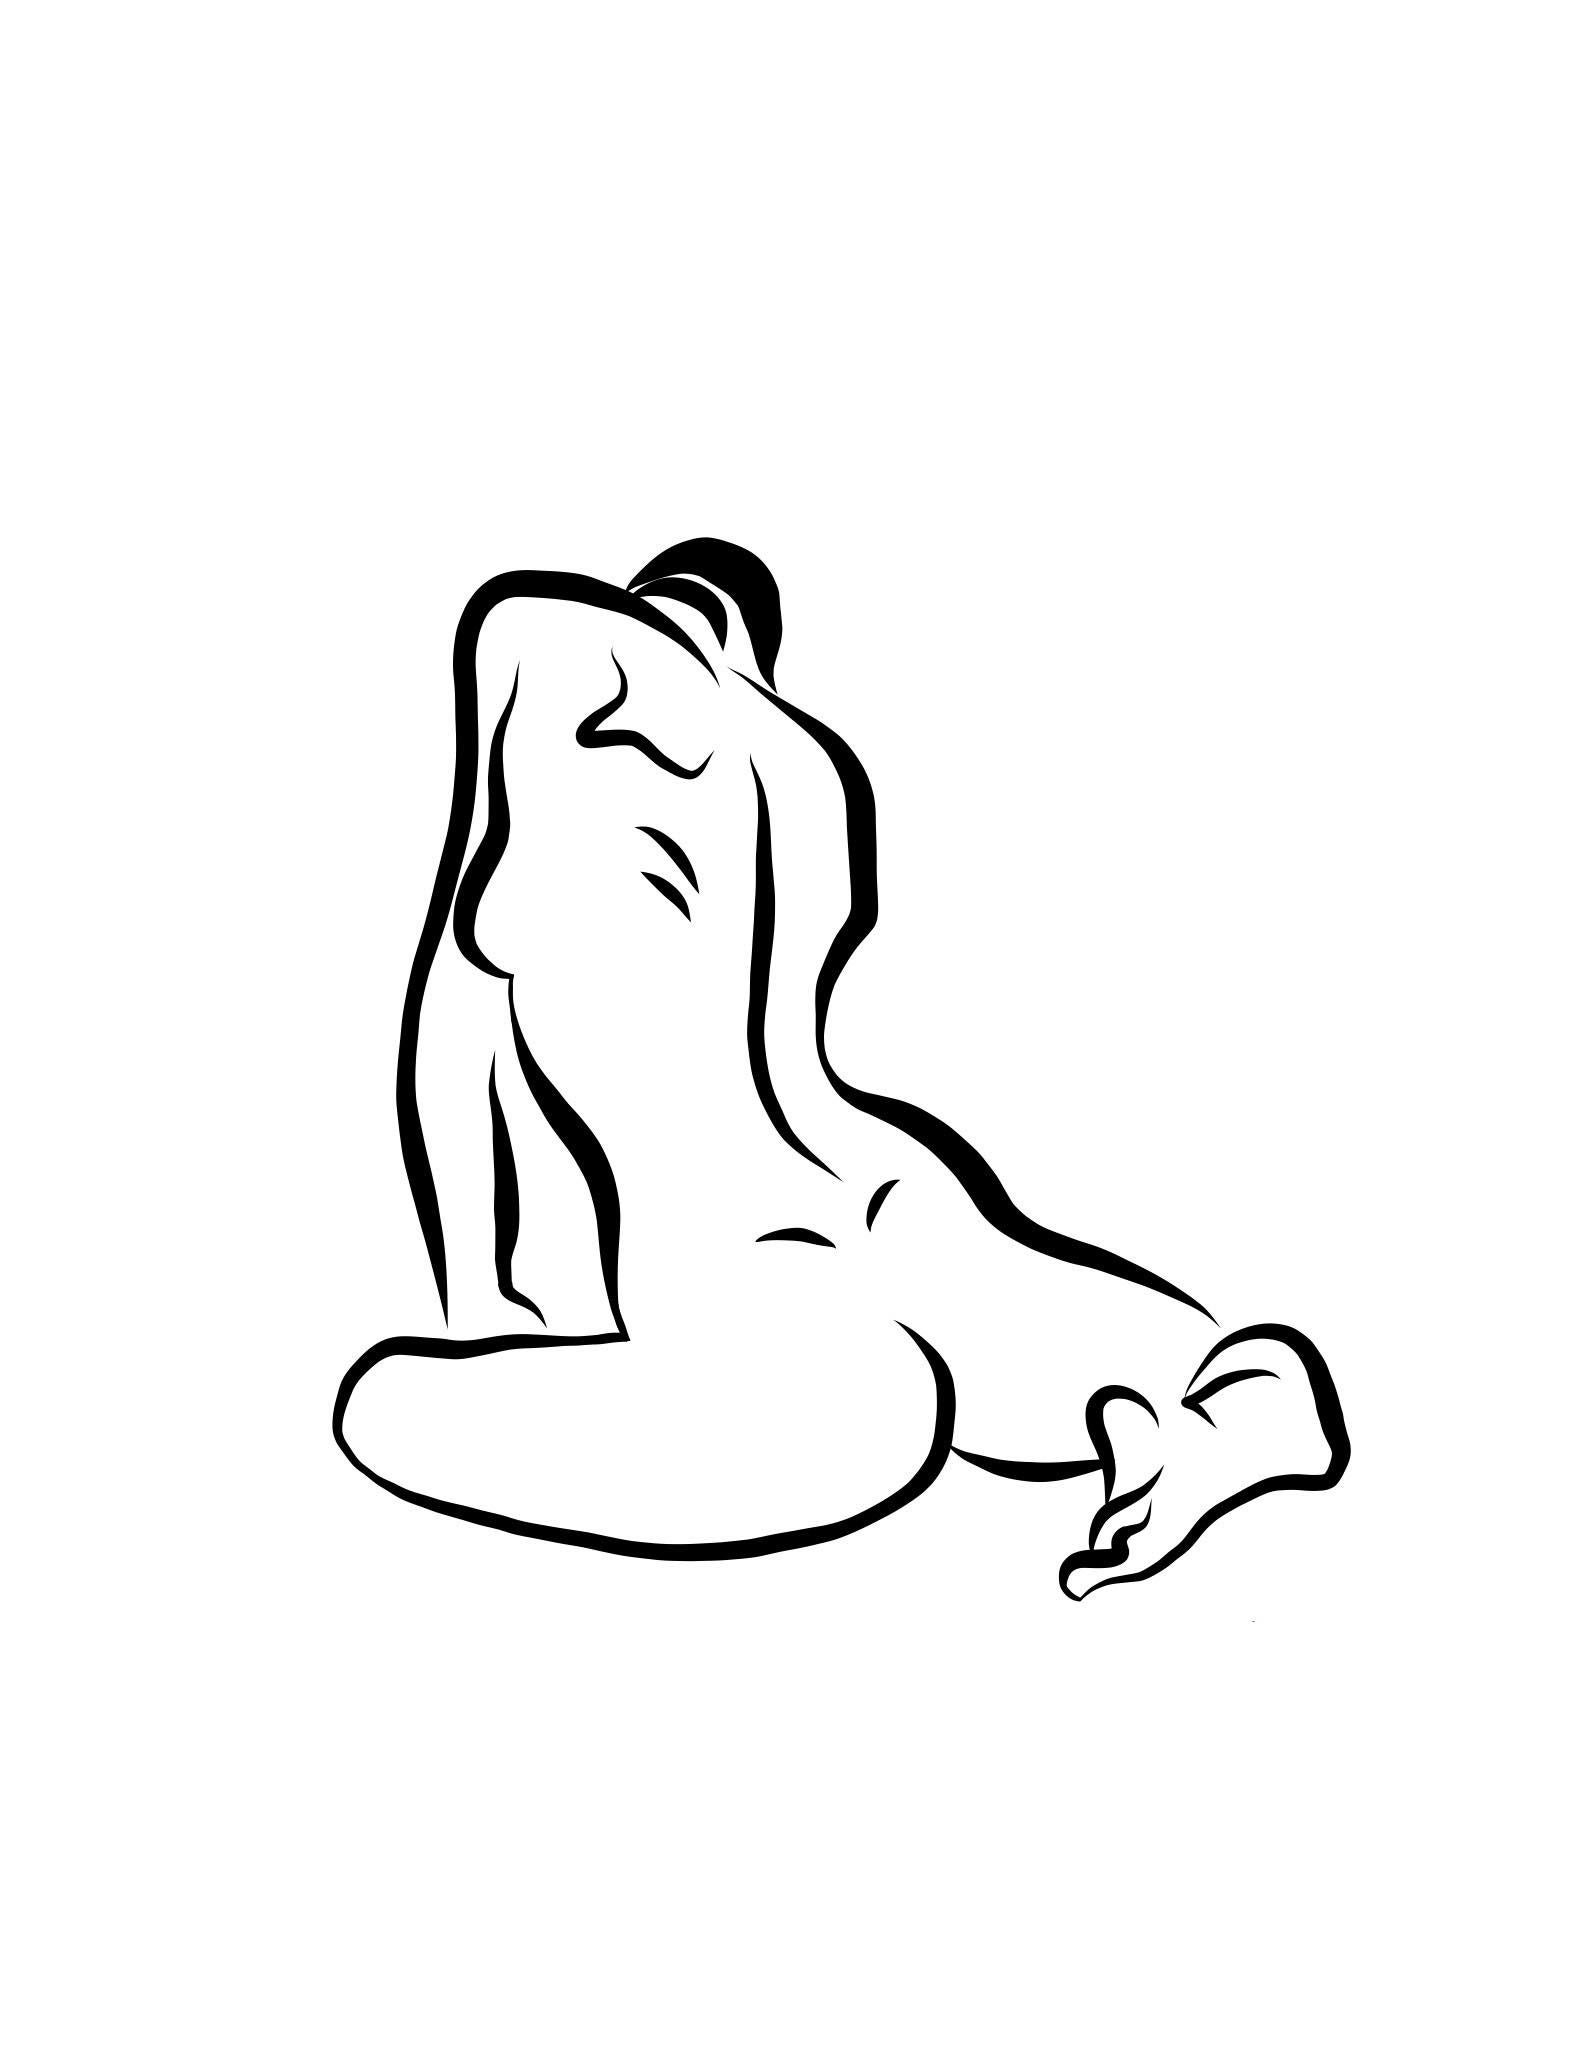 Nude Print Michael Binkley - Haiku #16, 1/50 - Digital Vector Drawing Seated Female Nude Woman Figure Behind